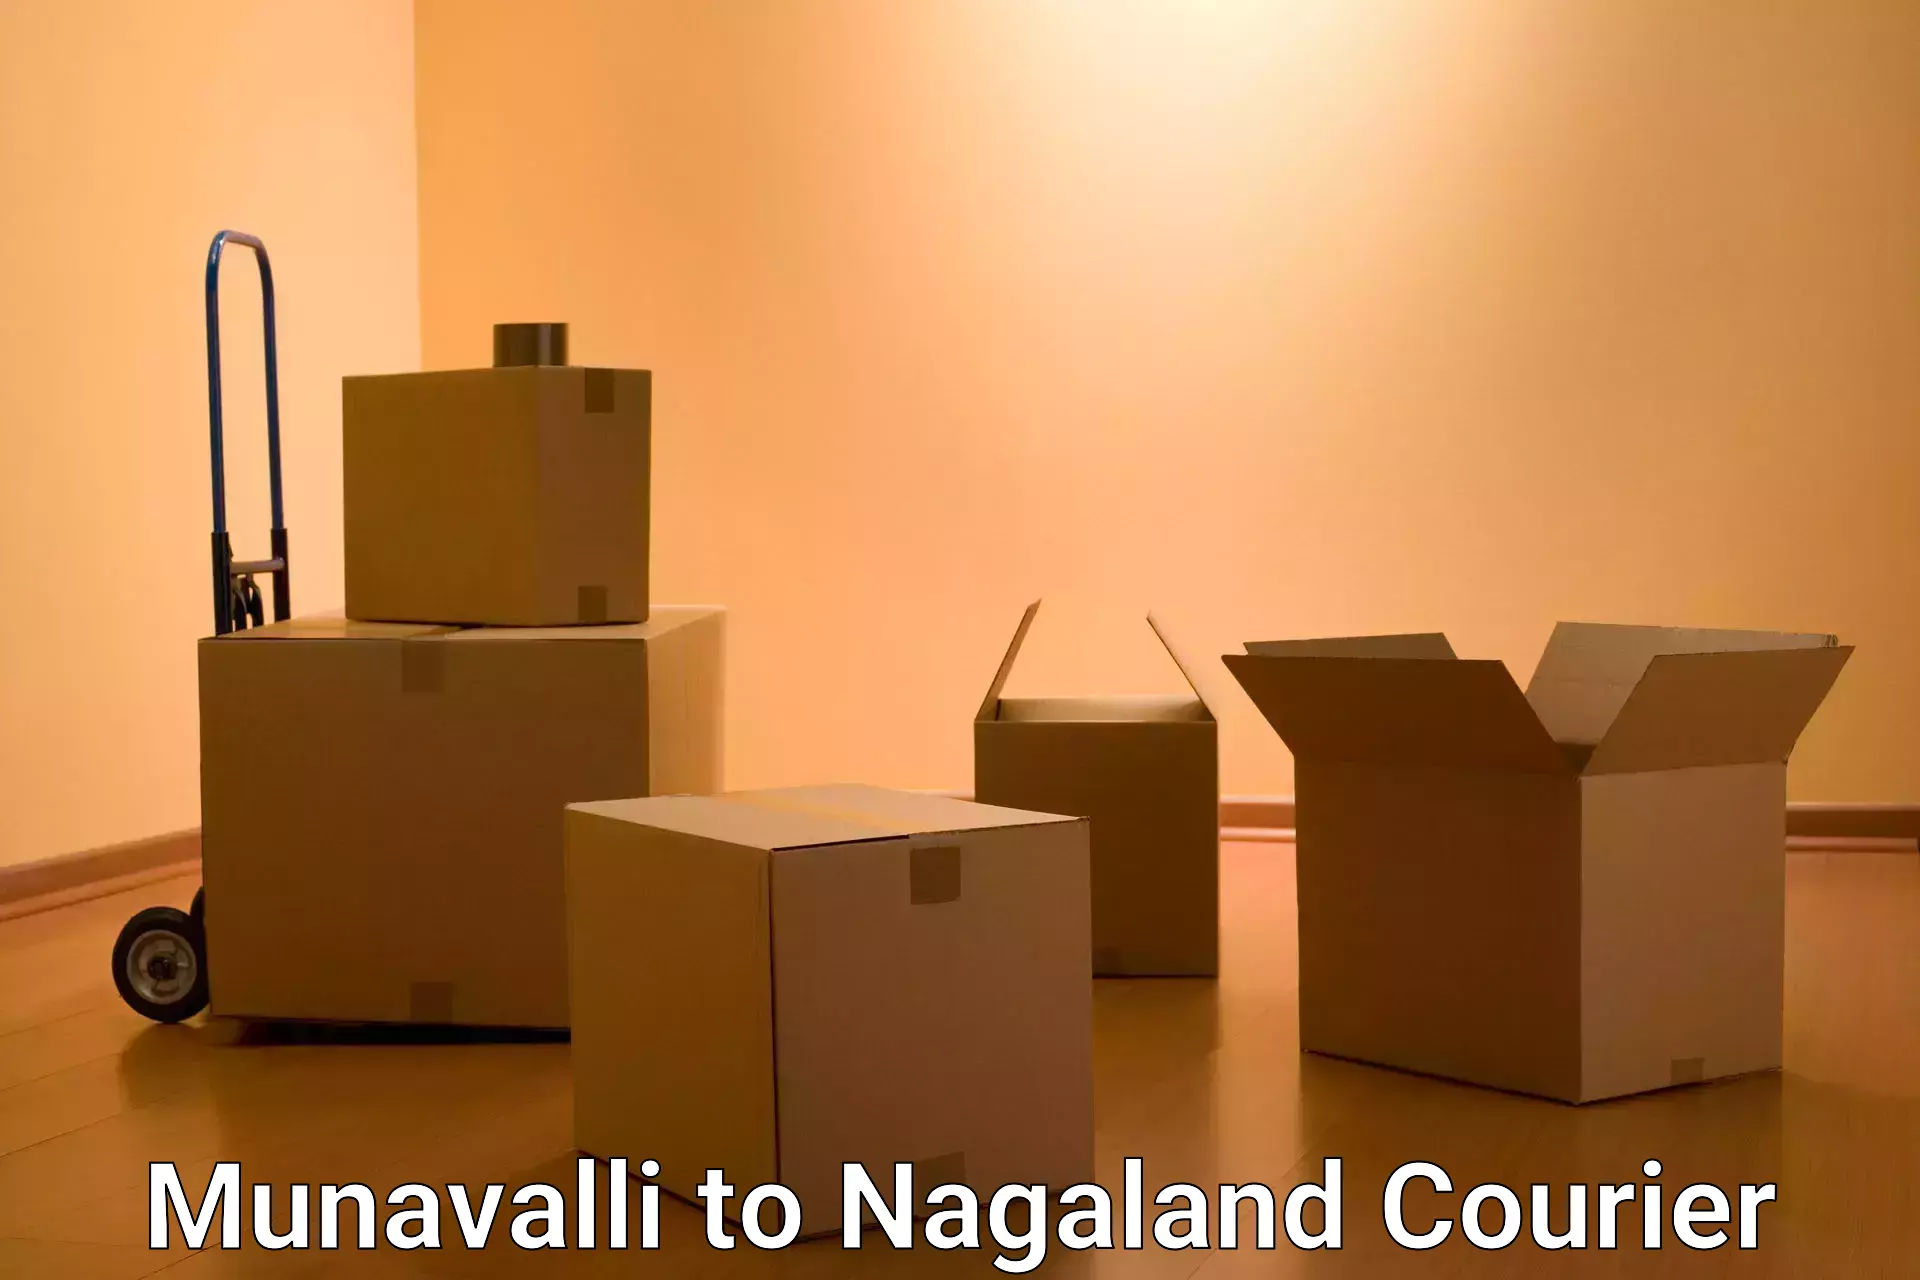 Express logistics service Munavalli to NIT Nagaland